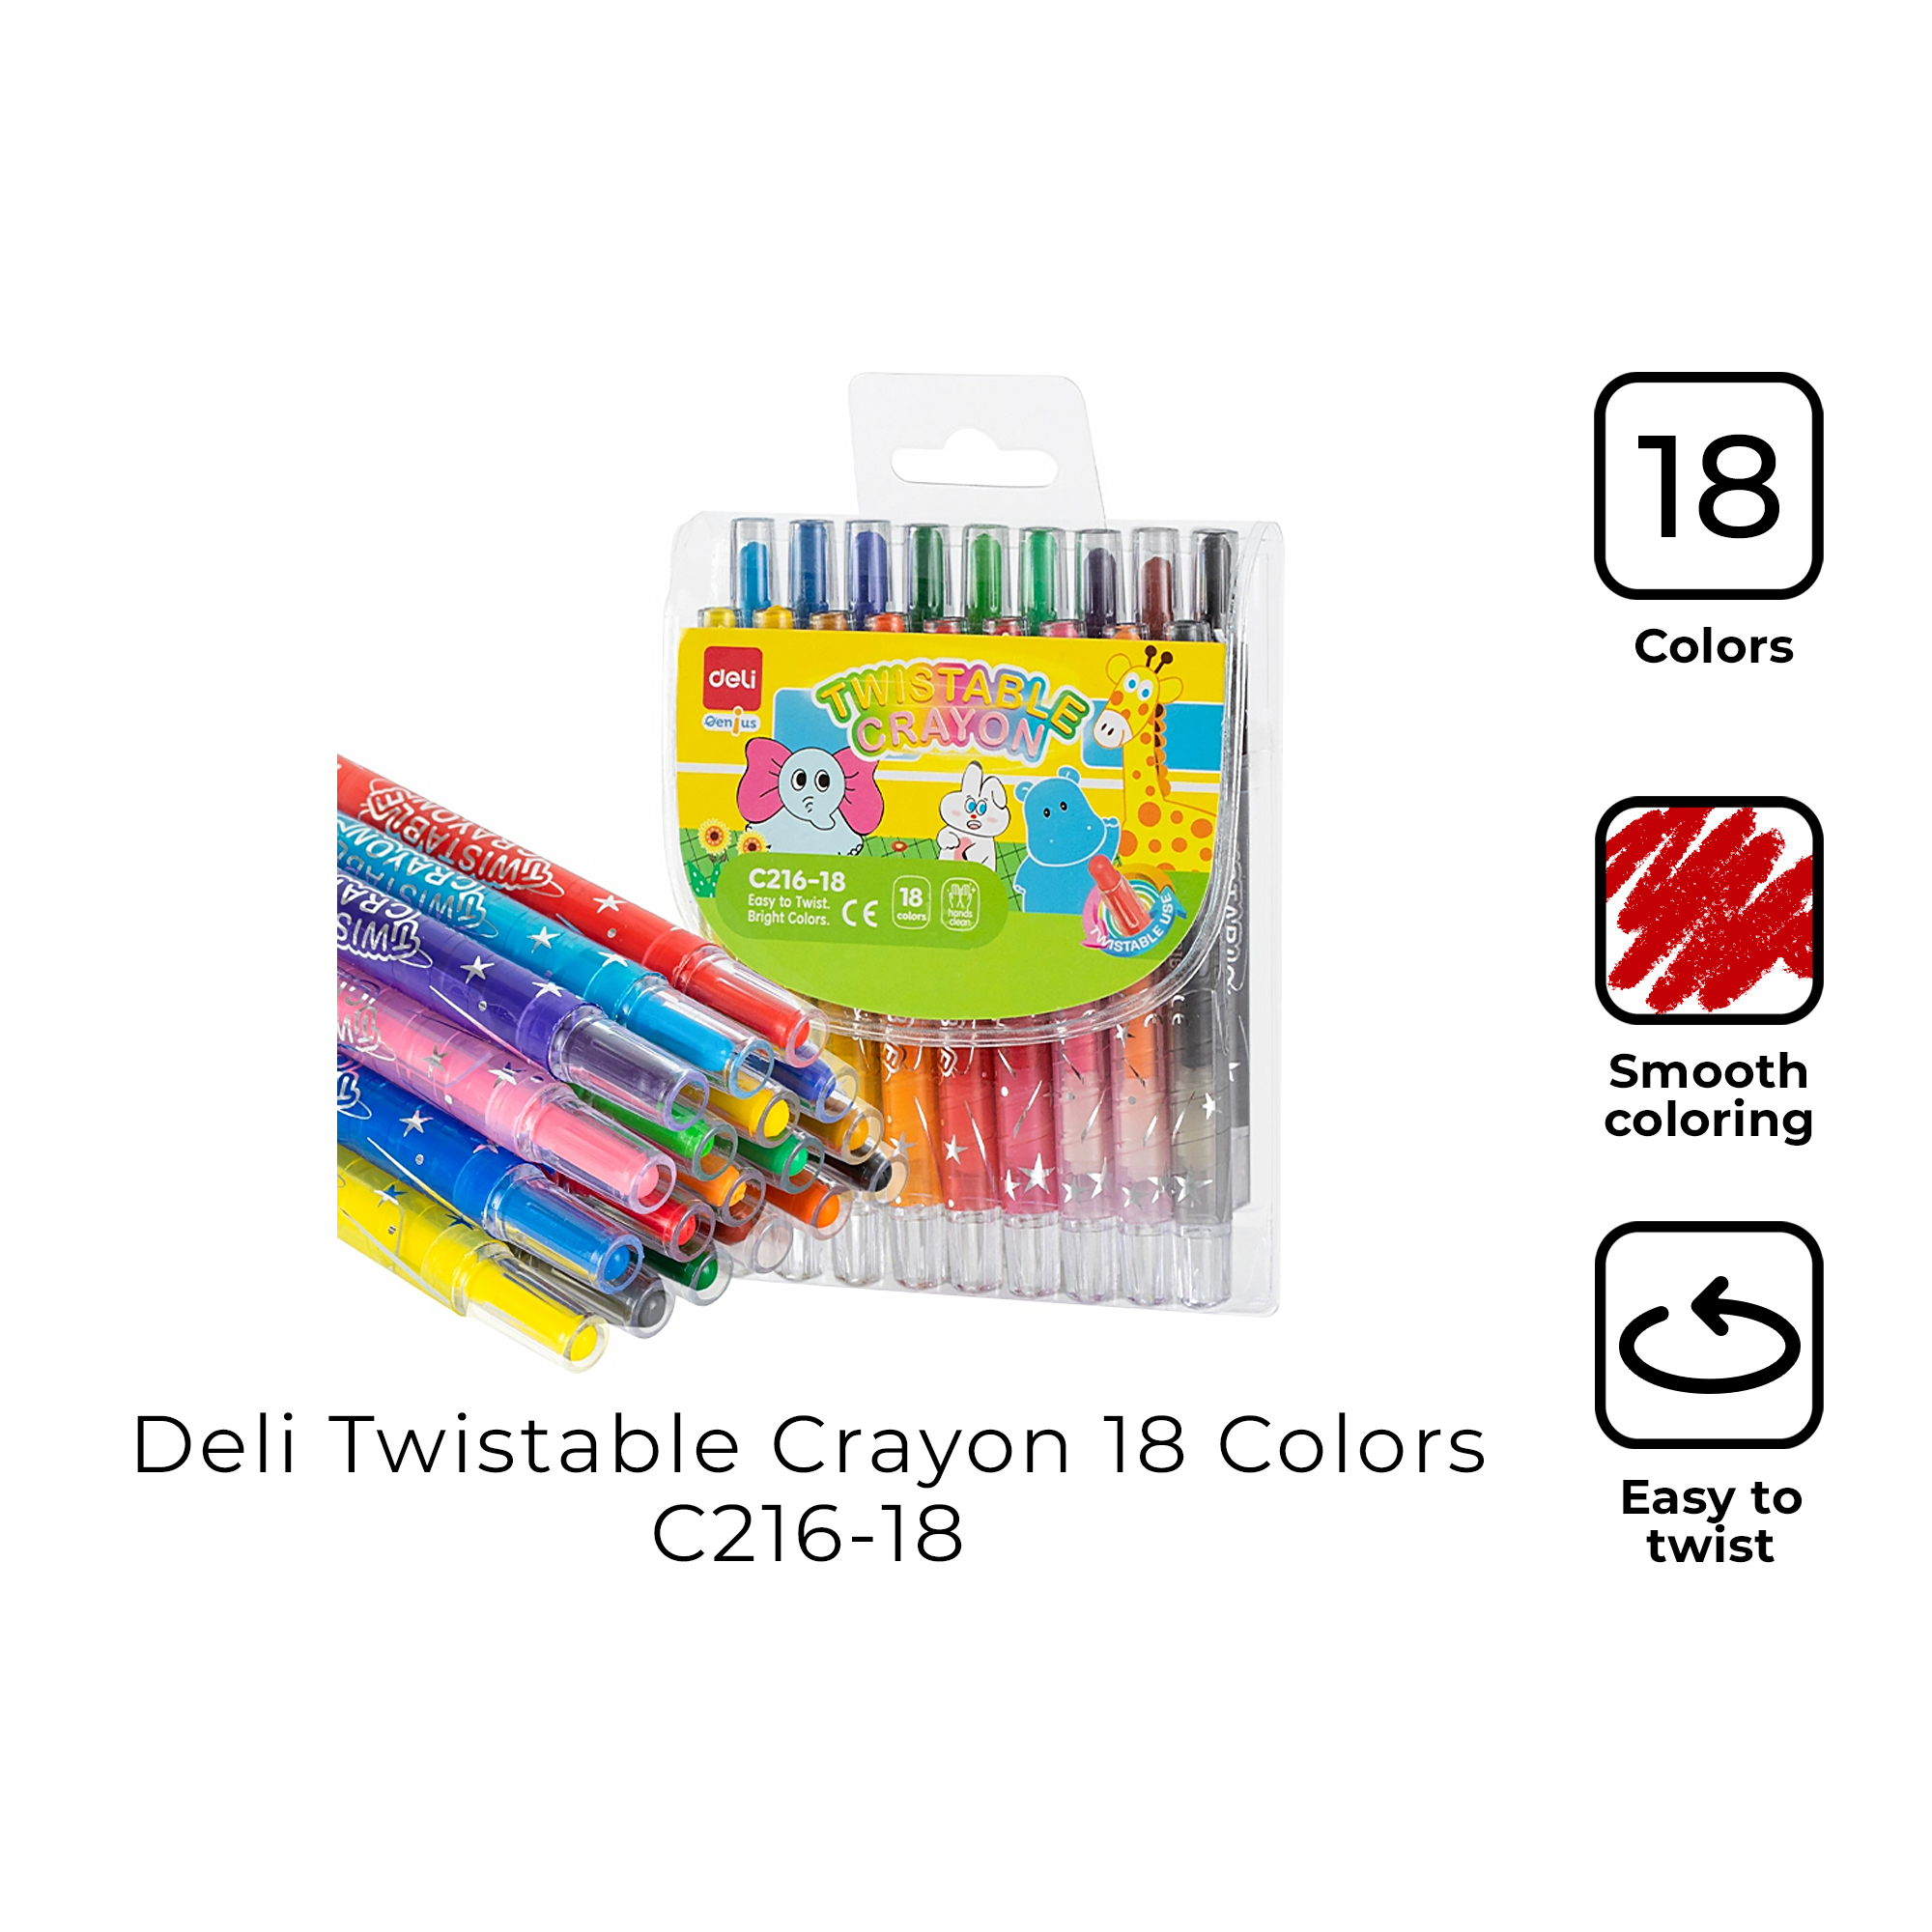 Deli-EC216-18 Twistable Crayon - Deli Group Co., Ltd.